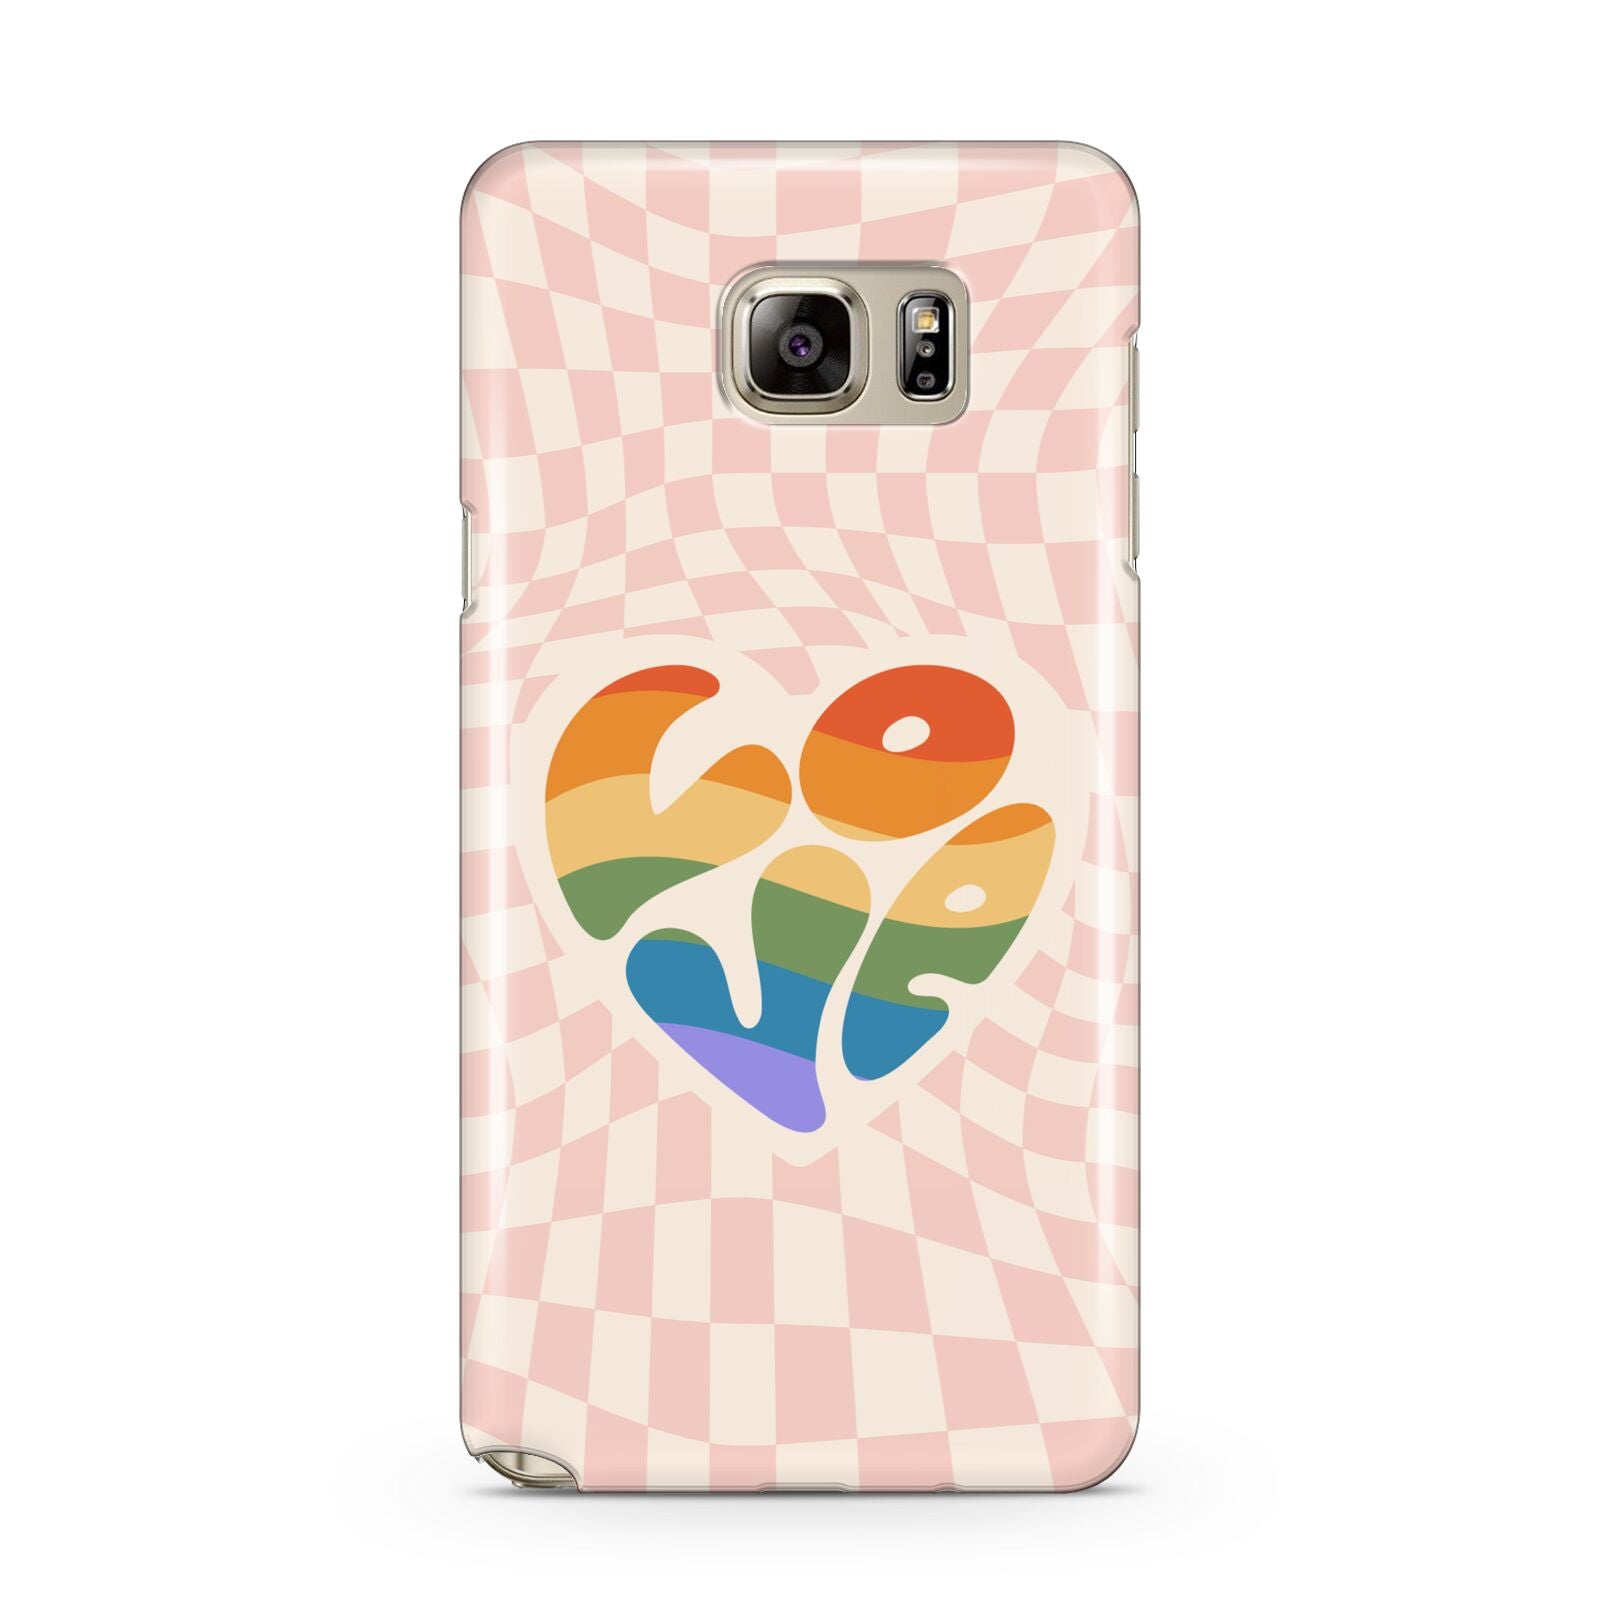 Pride Samsung Galaxy Note 5 Case